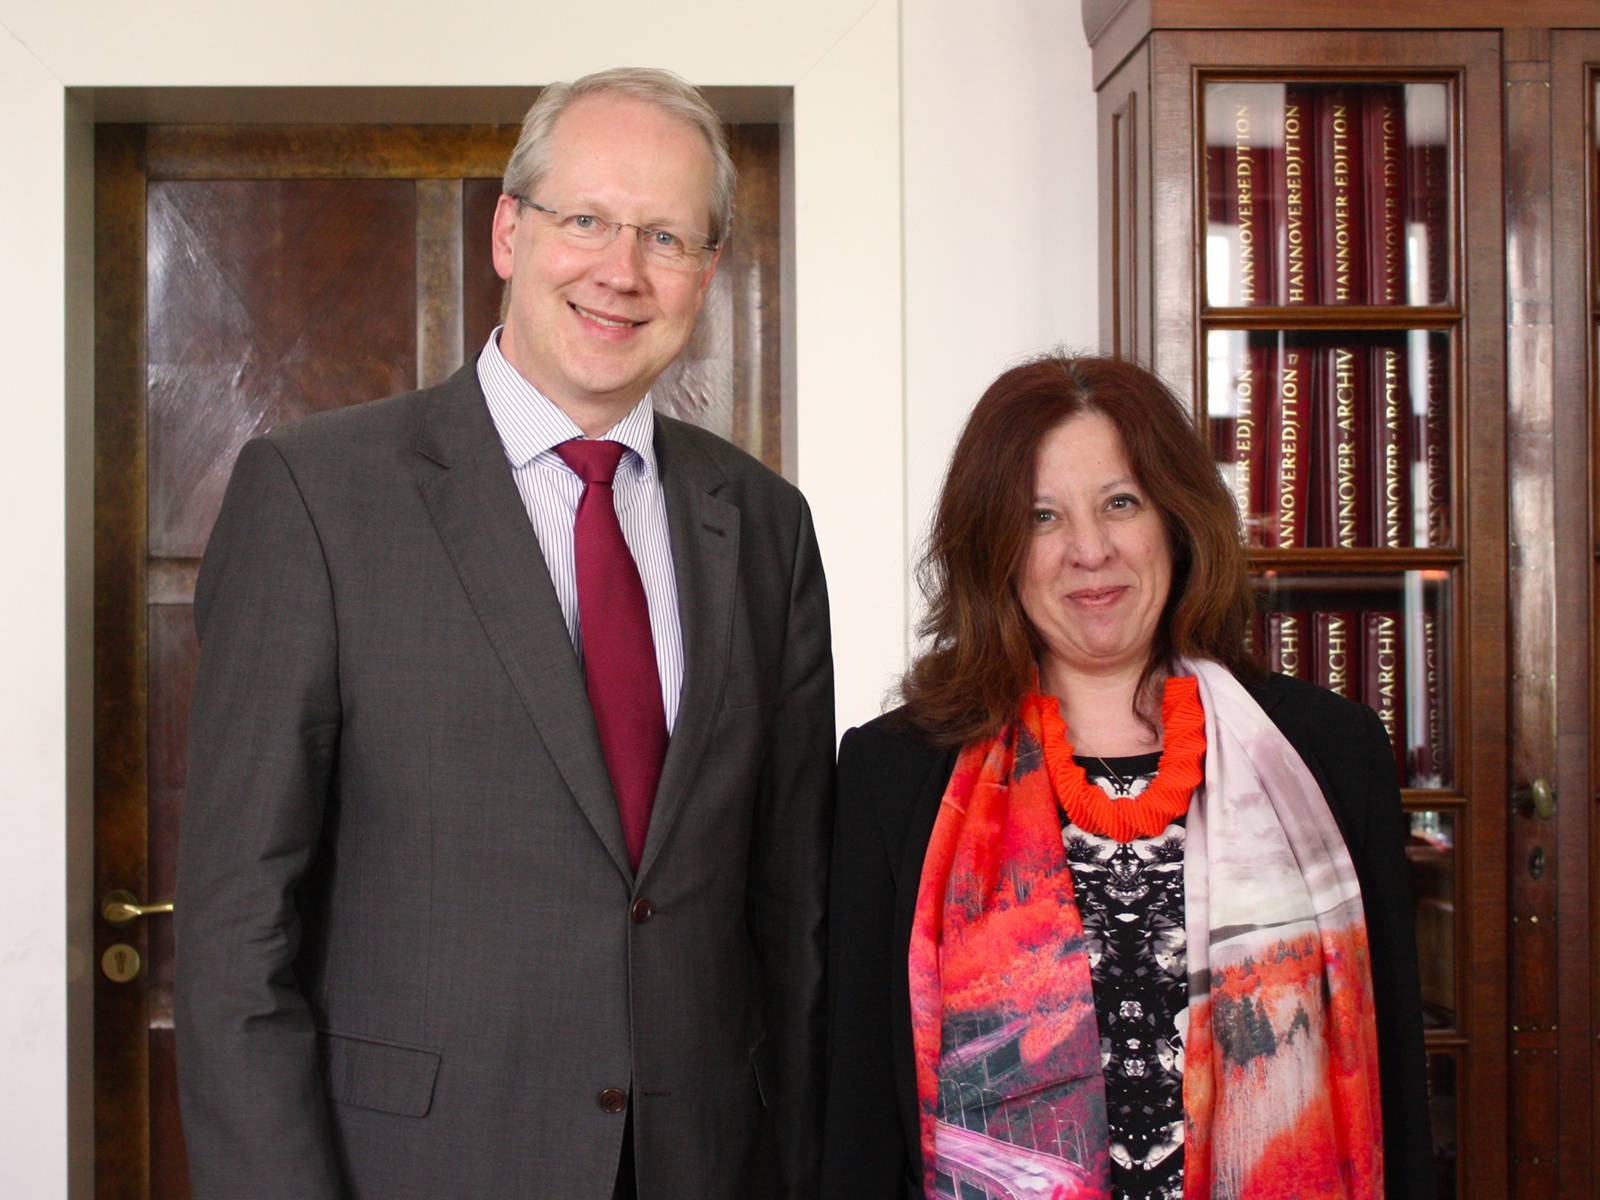 Oberbürgermeister Stefan Schostok und Luisa Pais Lowe, die Generalkonsulin von Portugal in Hamburg, stehen nebeneinander